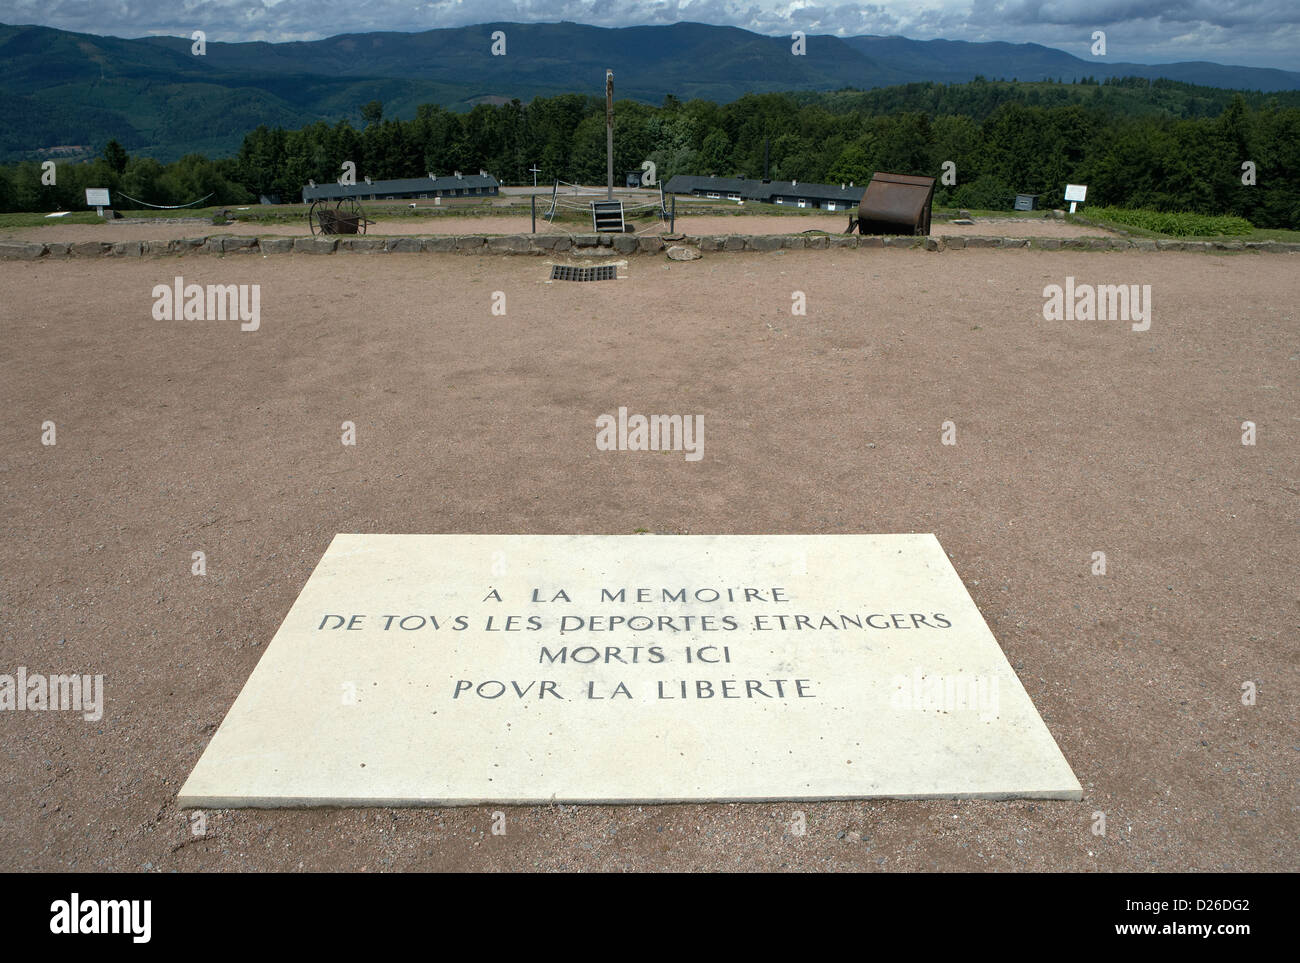 Natzwiller, France, une plaque à l'ancien camp de concentration de Natzweiler Struthof Banque D'Images